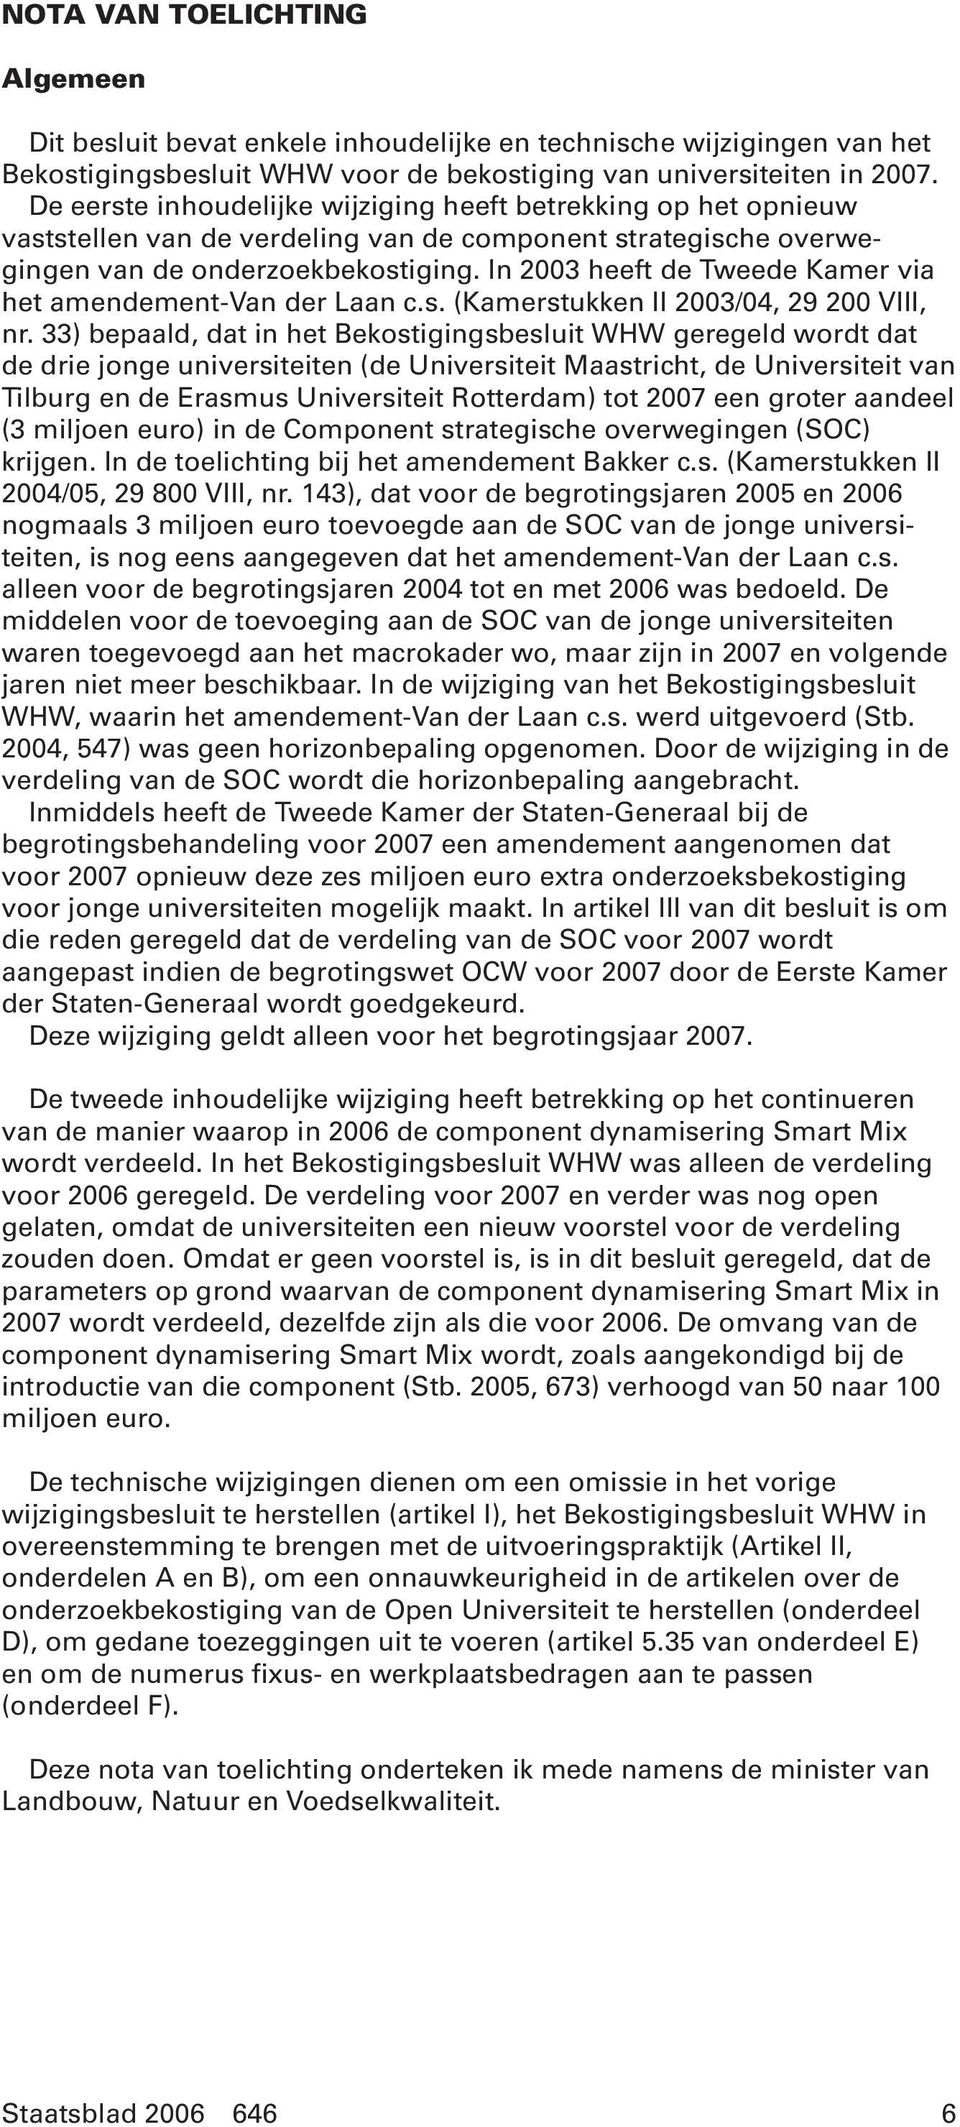 In 2003 heeft de Tweede Kamer via het amendement-van der Laan c.s. (Kamerstukken II 2003/04, 29 200 VIII, nr.